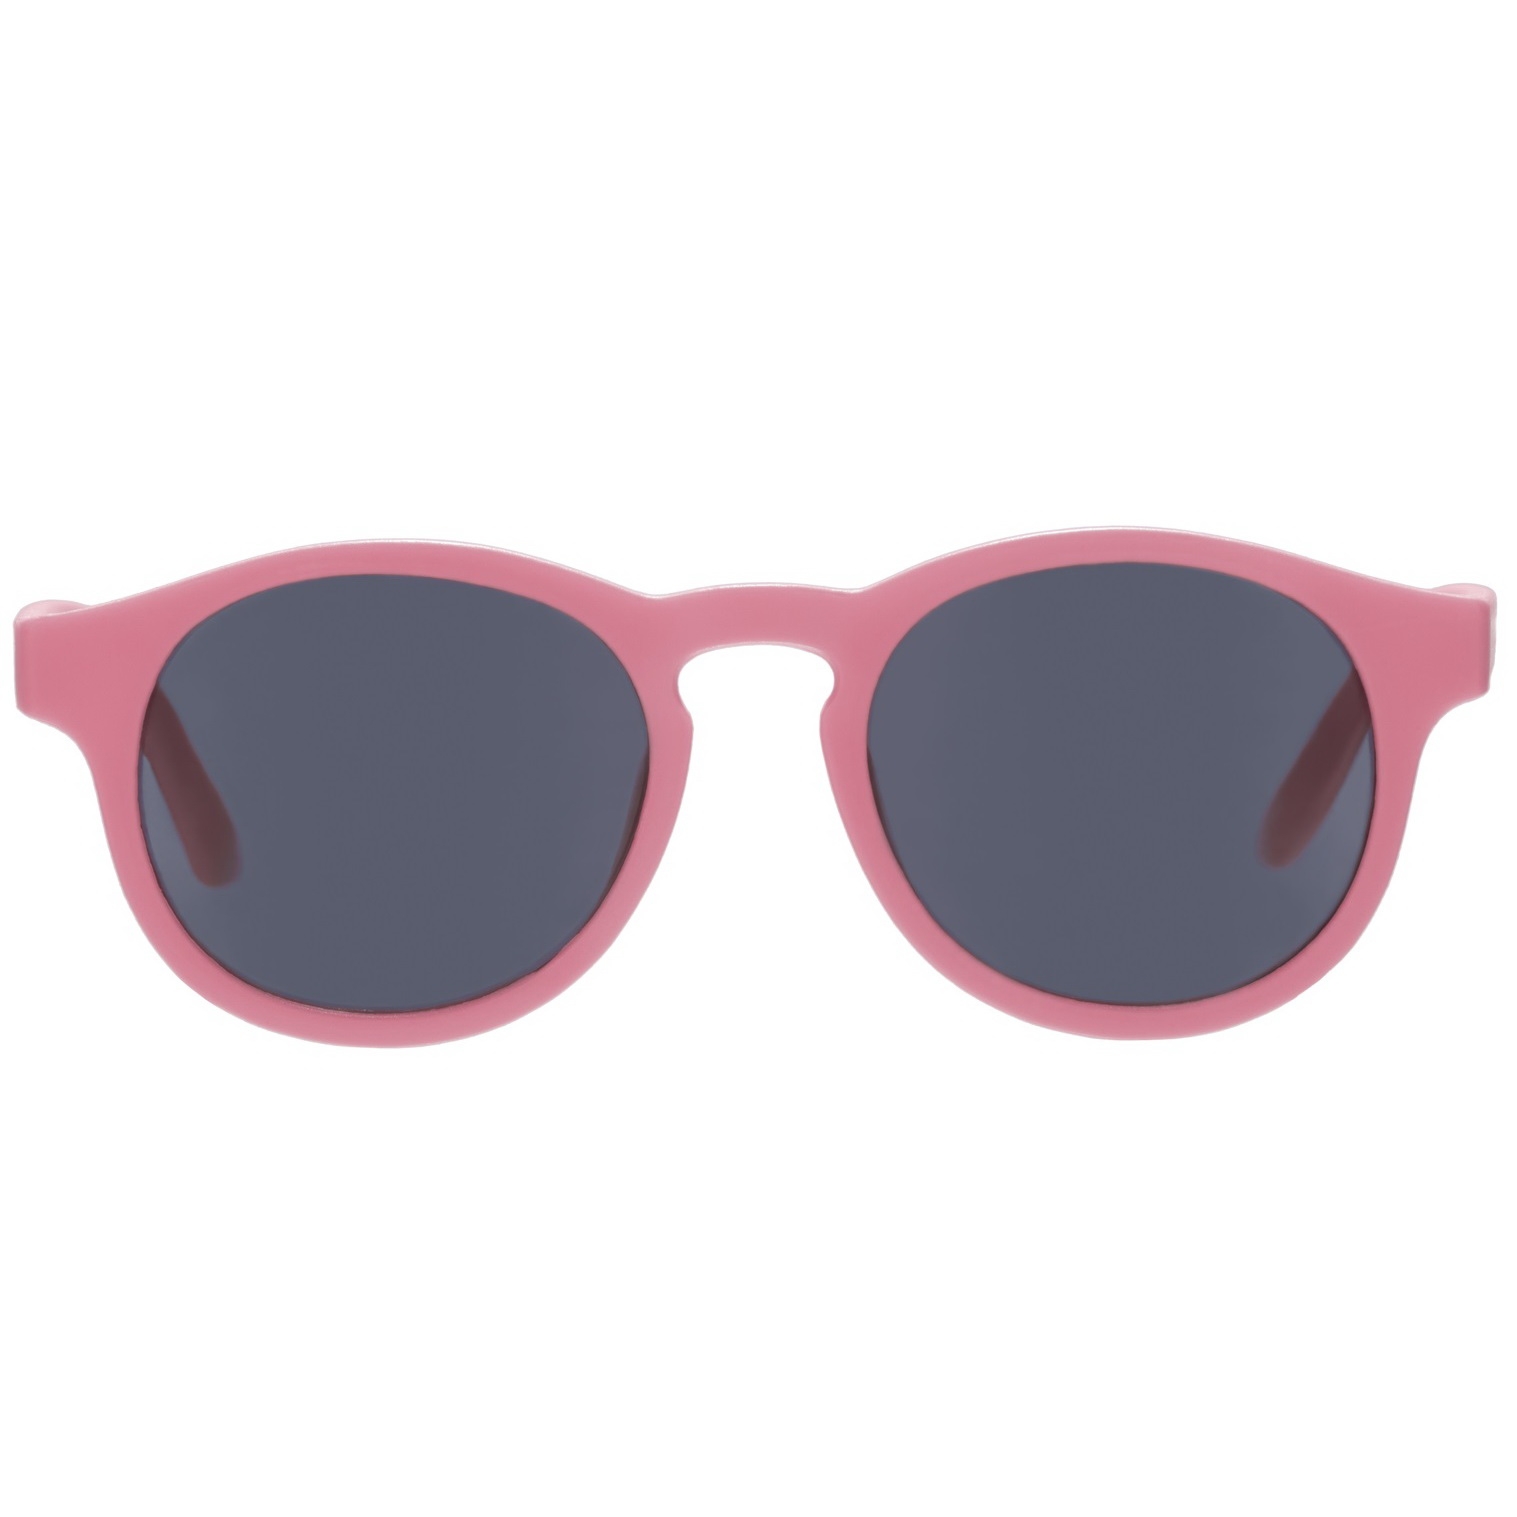 Солнцезащитные очки - Babiators Original Keyhole. Чудесненький арбуз/Wonderfully Watermelon, дымчатые, Classic  